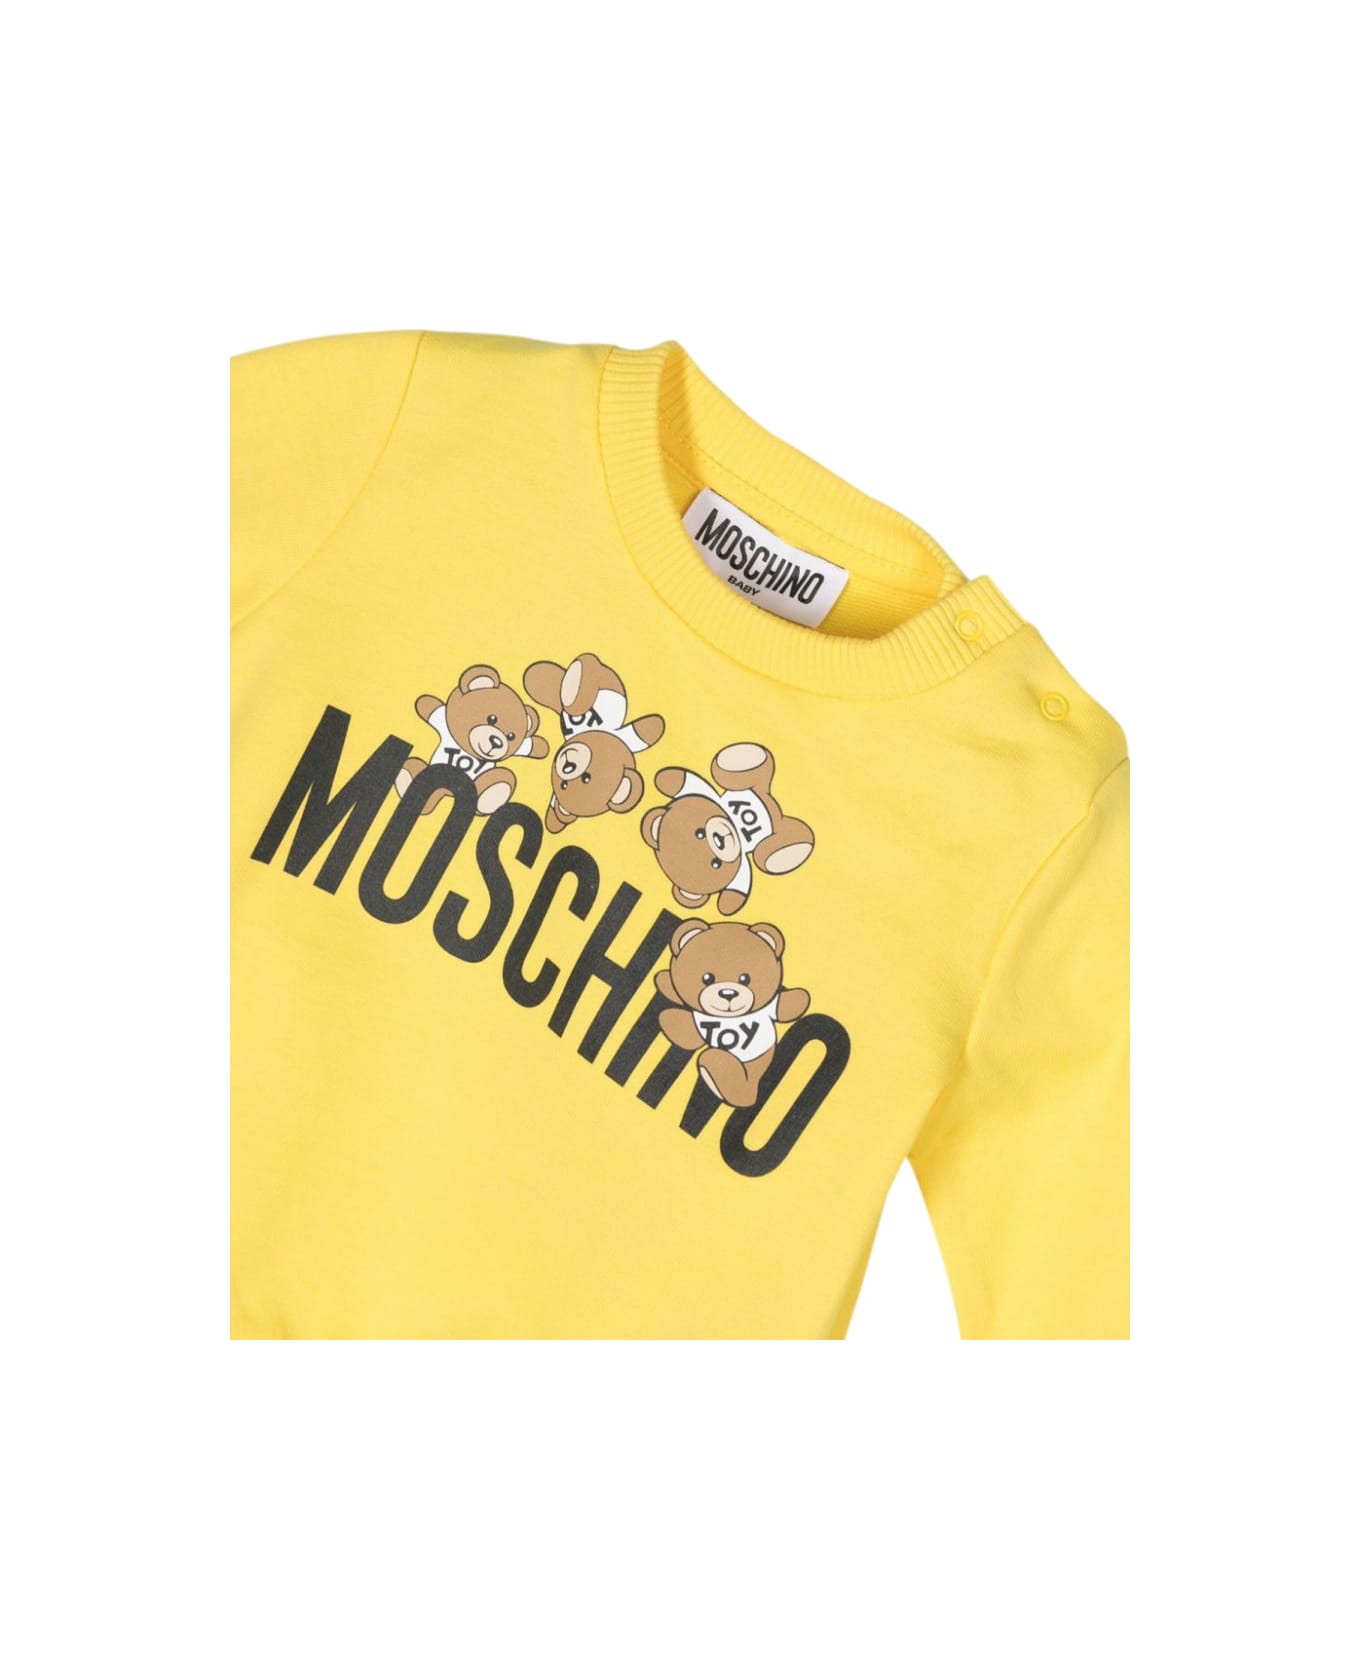 Moschino Sweatshirt - YELLOW